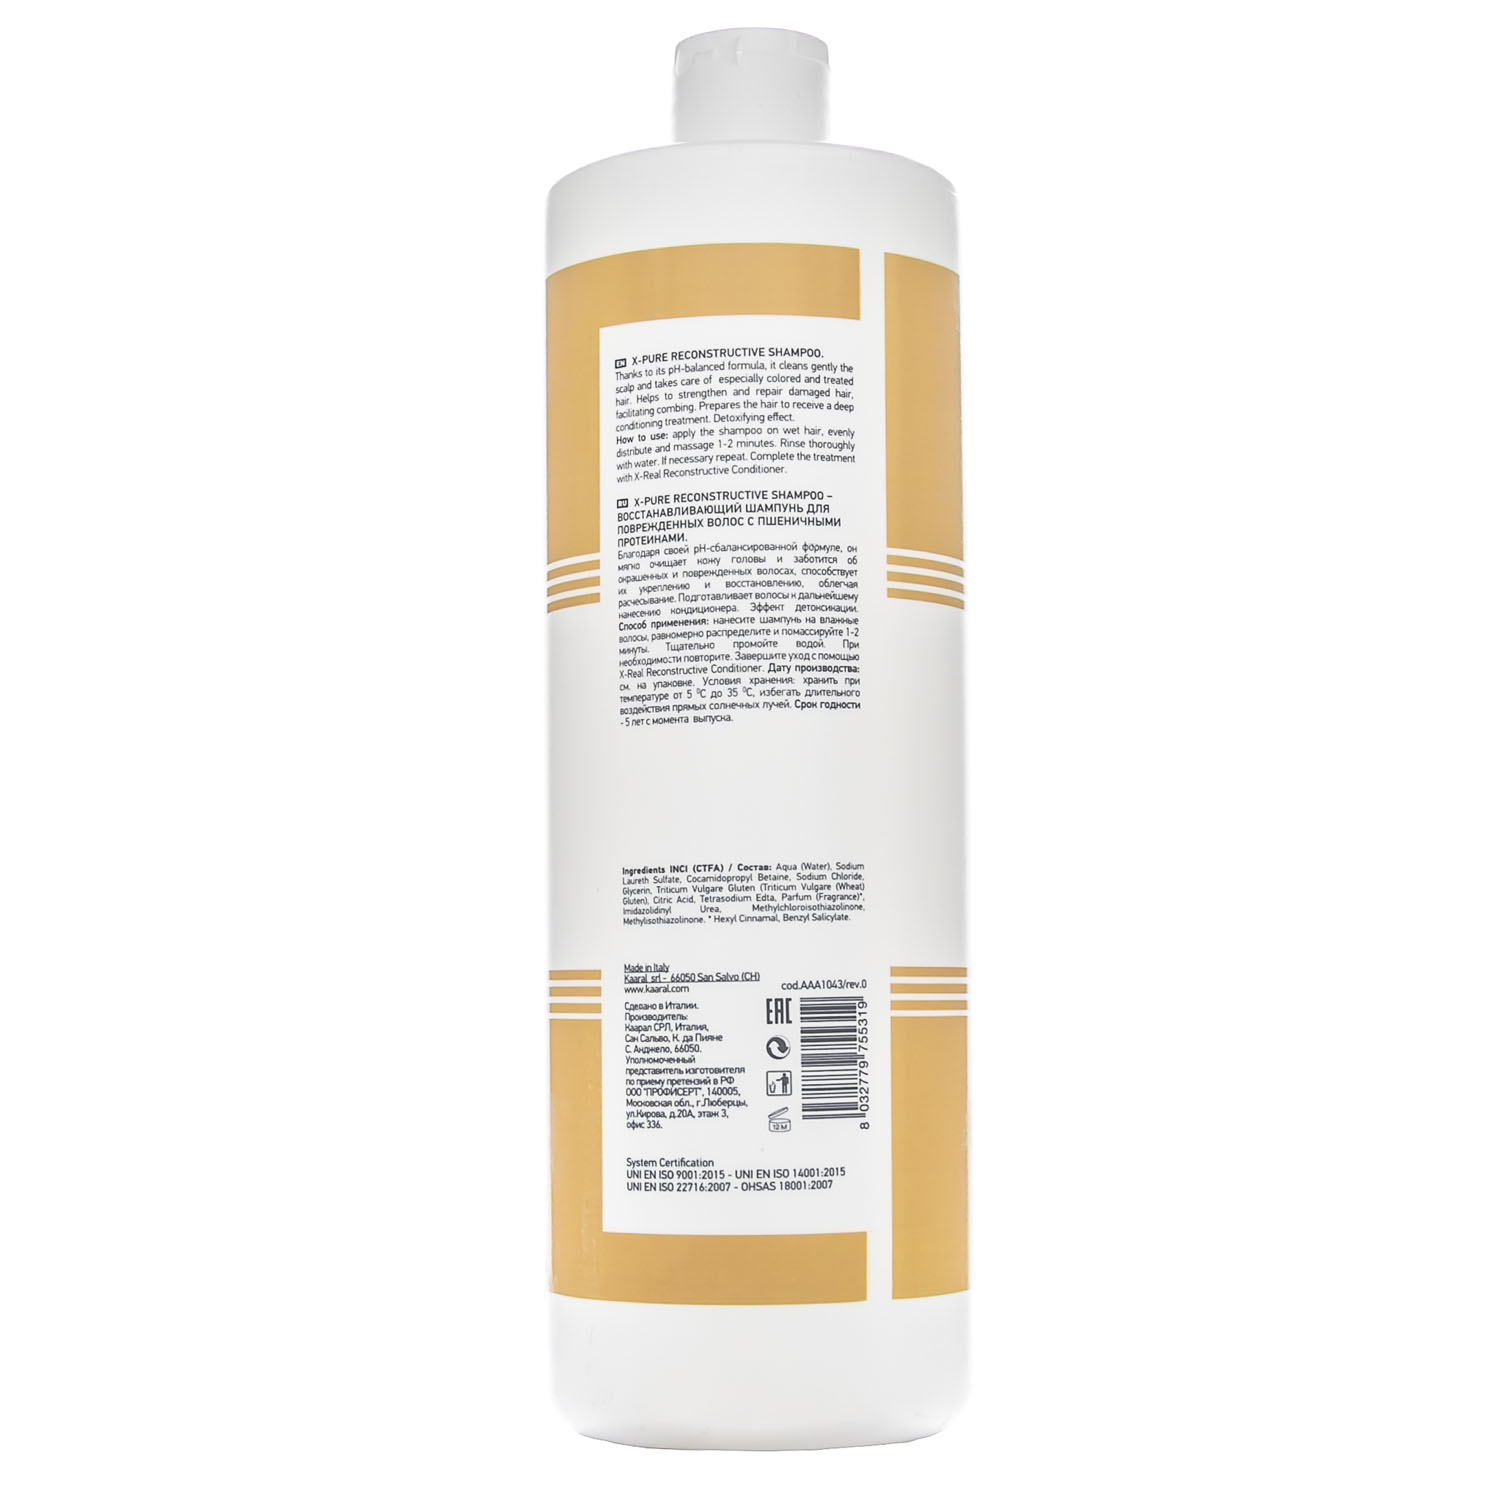 картинка Восстанавливающий шампунь для поврежденных волос с пшеничными протеинами X-Pure Reconstructive Shampoo, 1000 мл от официального интернет-магазина Каарал